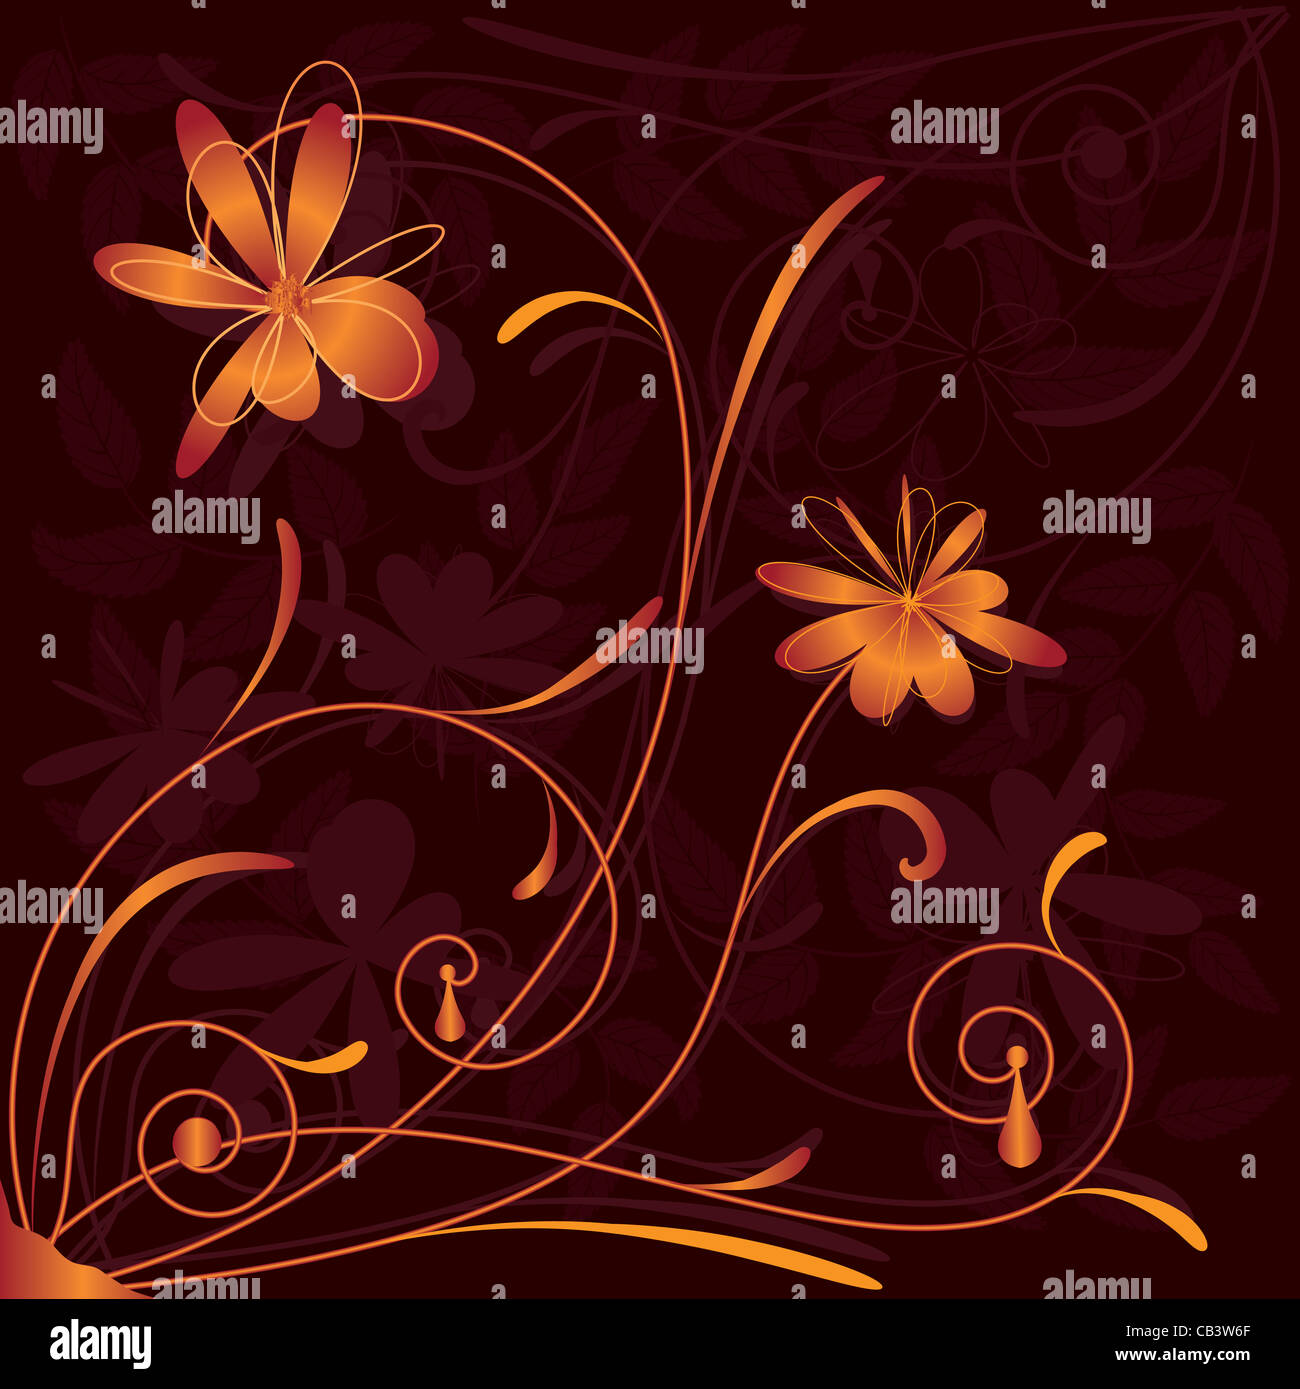 Motif floral de fleurs stylisées Banque D'Images